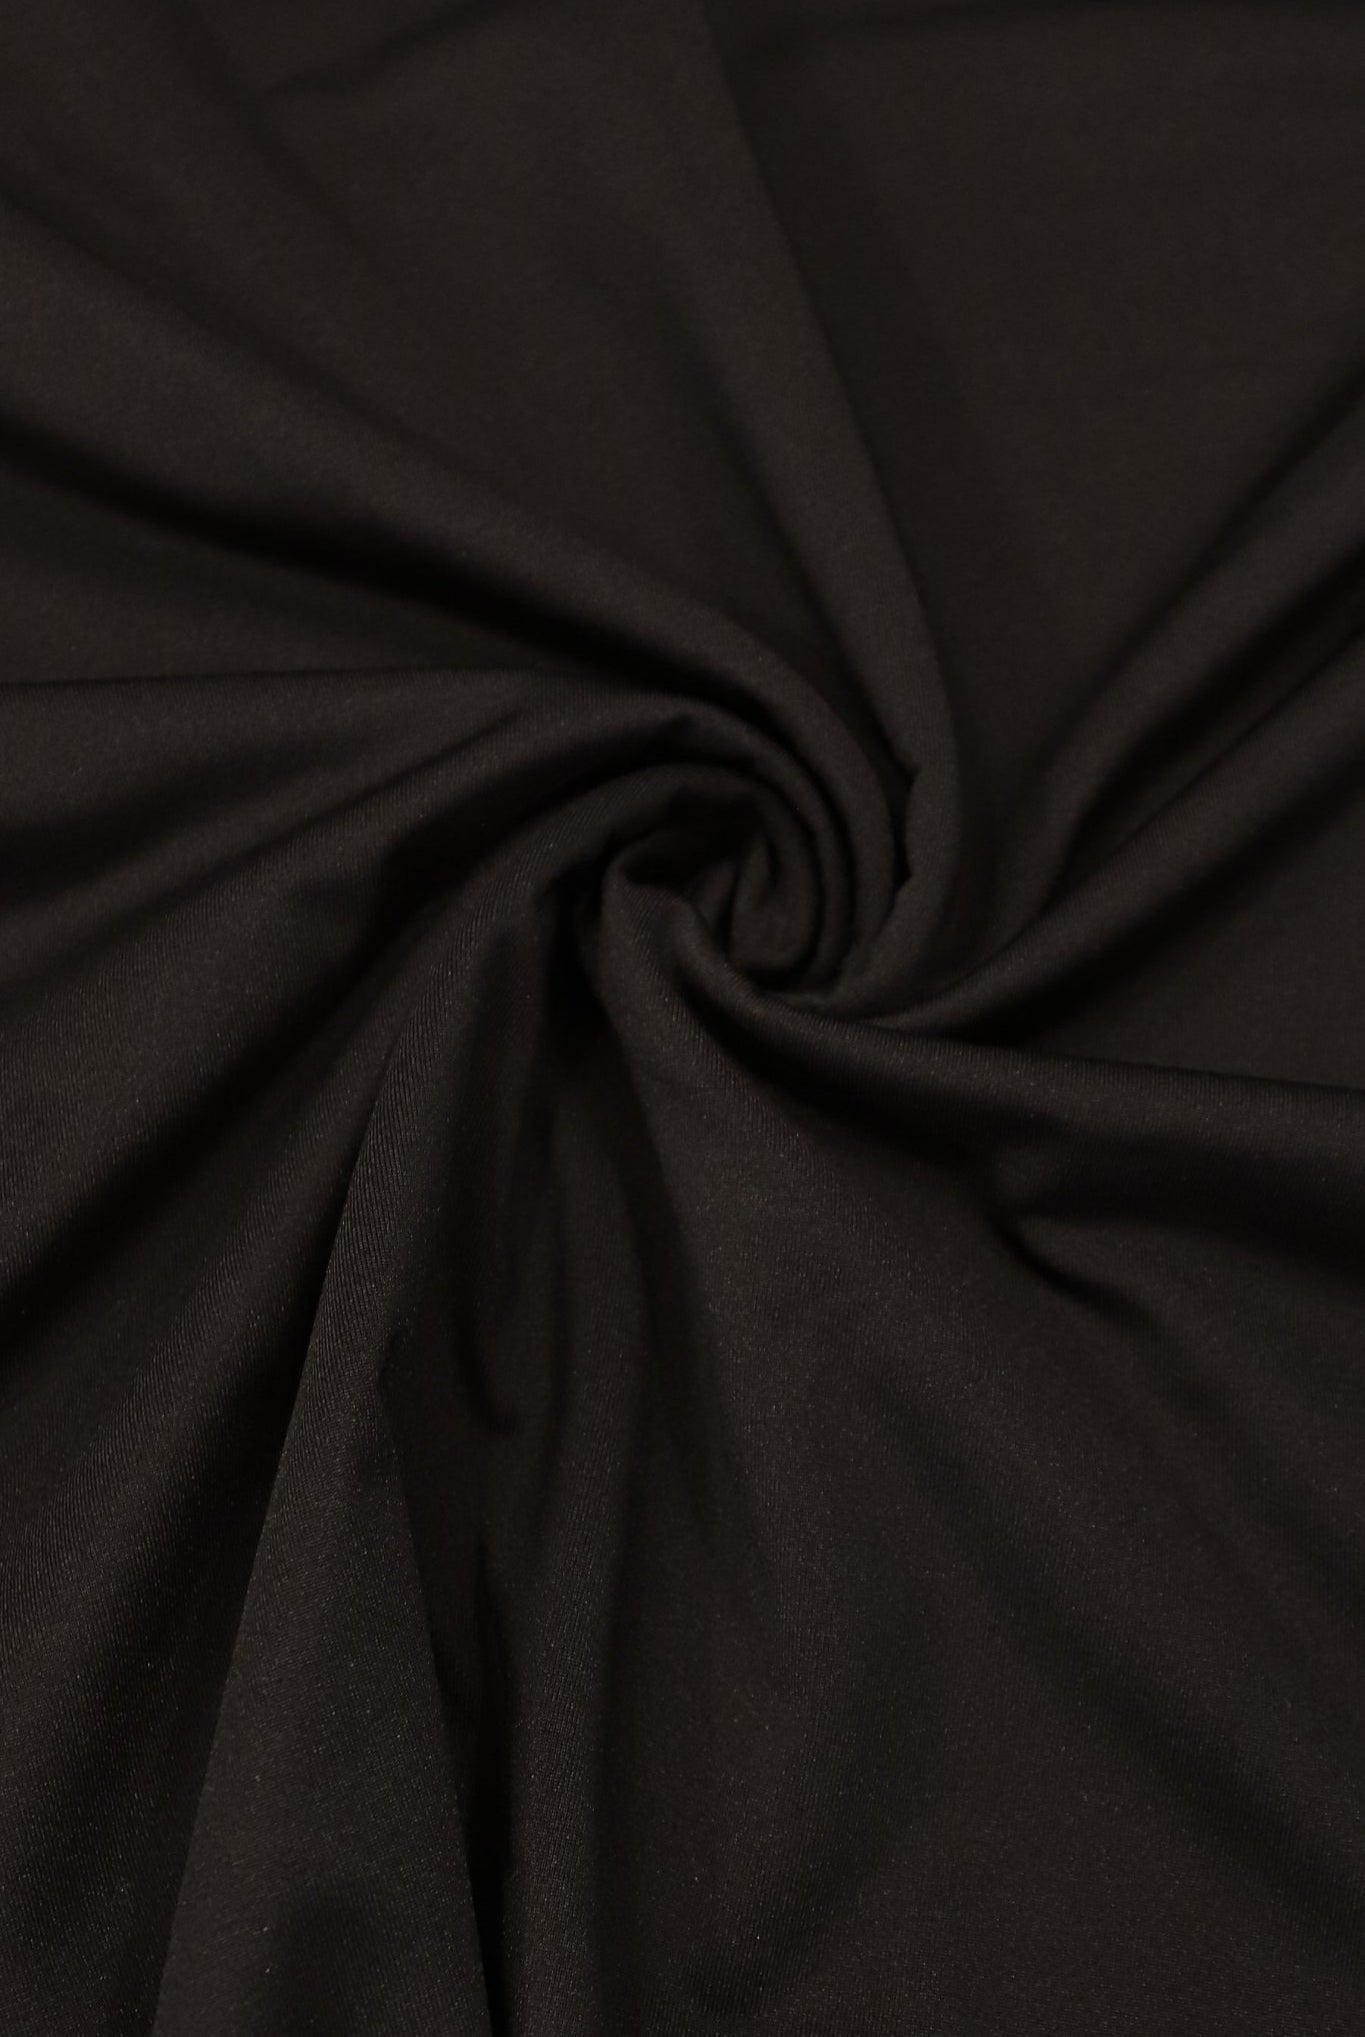 Night Black, Fleece Backed, Athletic Brushed Poly Knit - Boho Fabrics